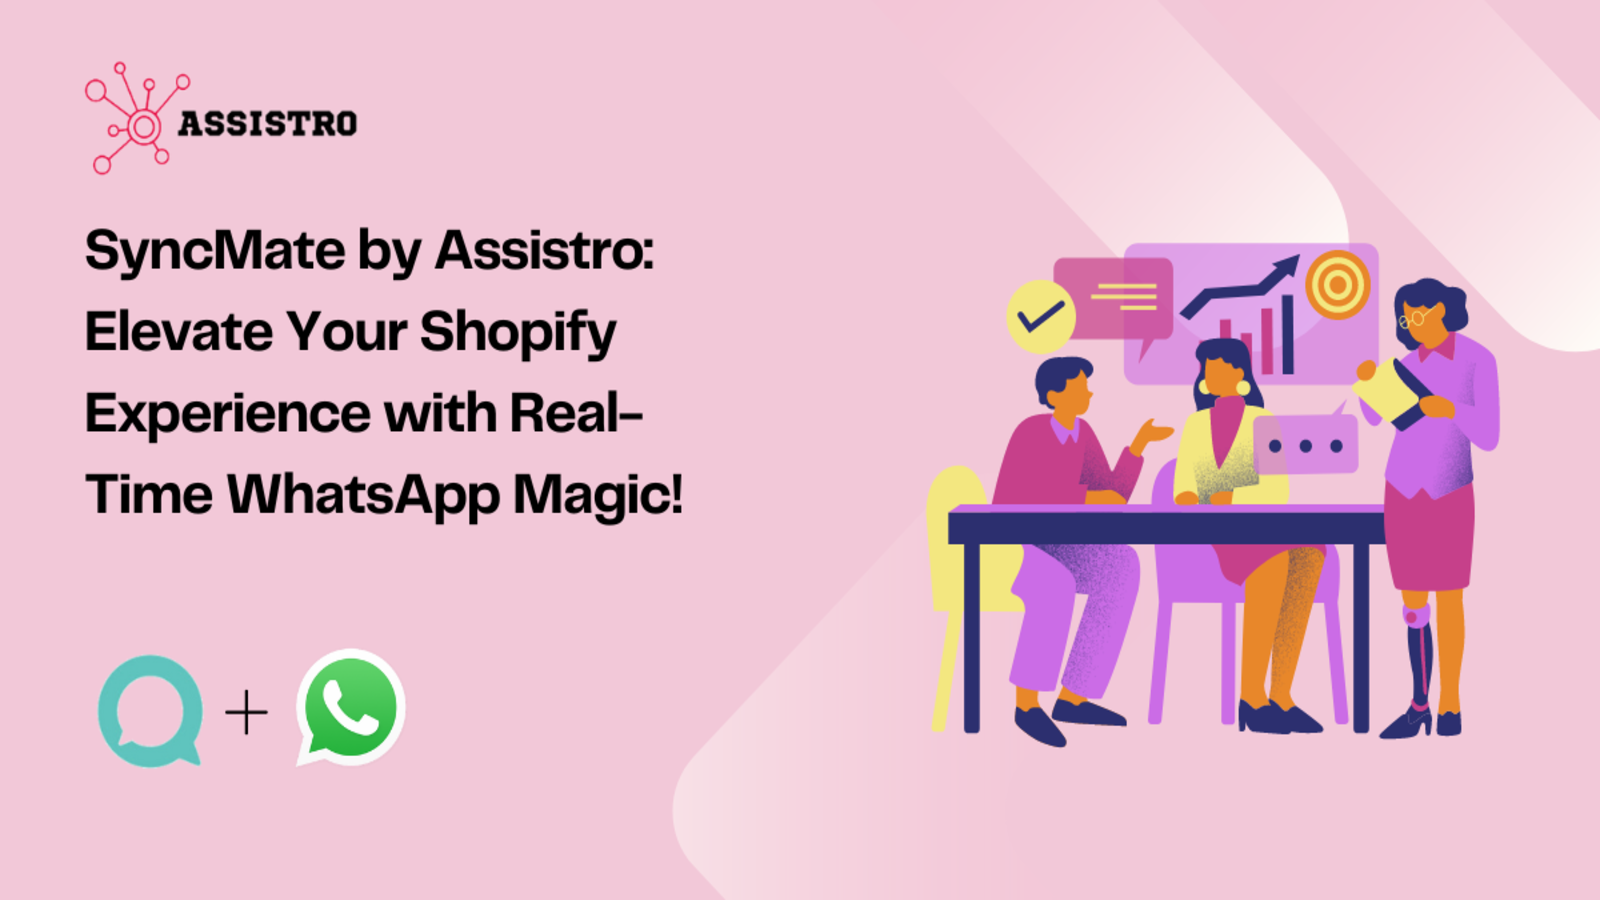 SyncMate by Assistro: Melhore a Experiência do Cliente no Shopify